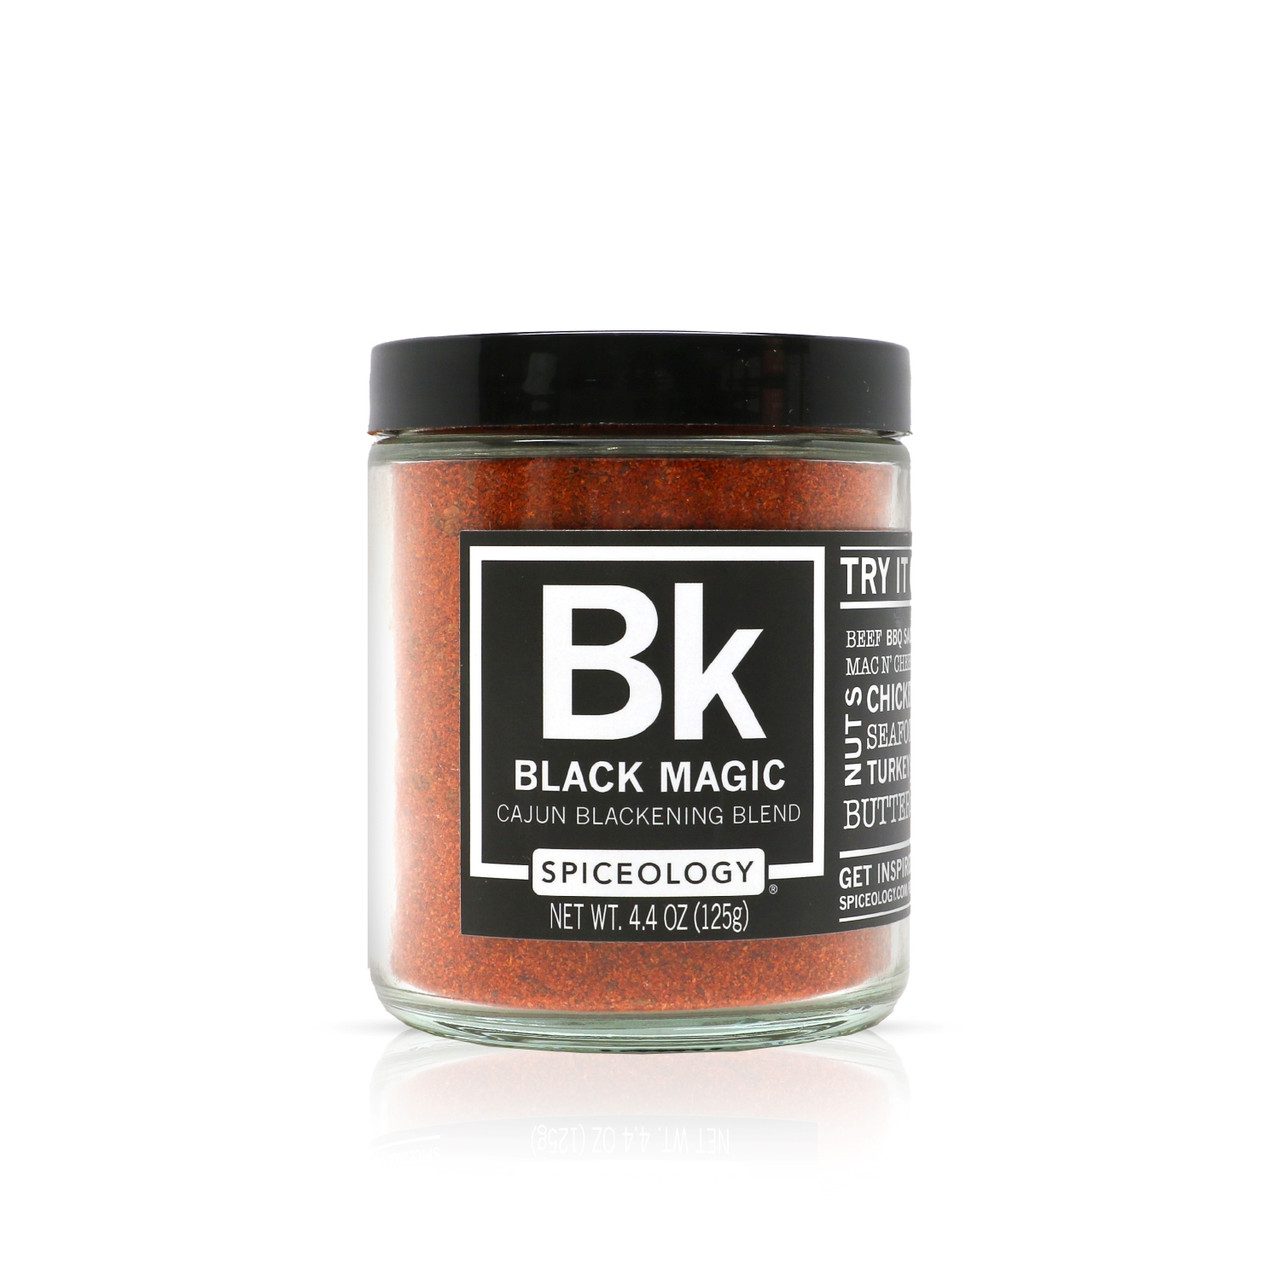 Black Magic Cajun Blackening Seasoning and Dry Rub